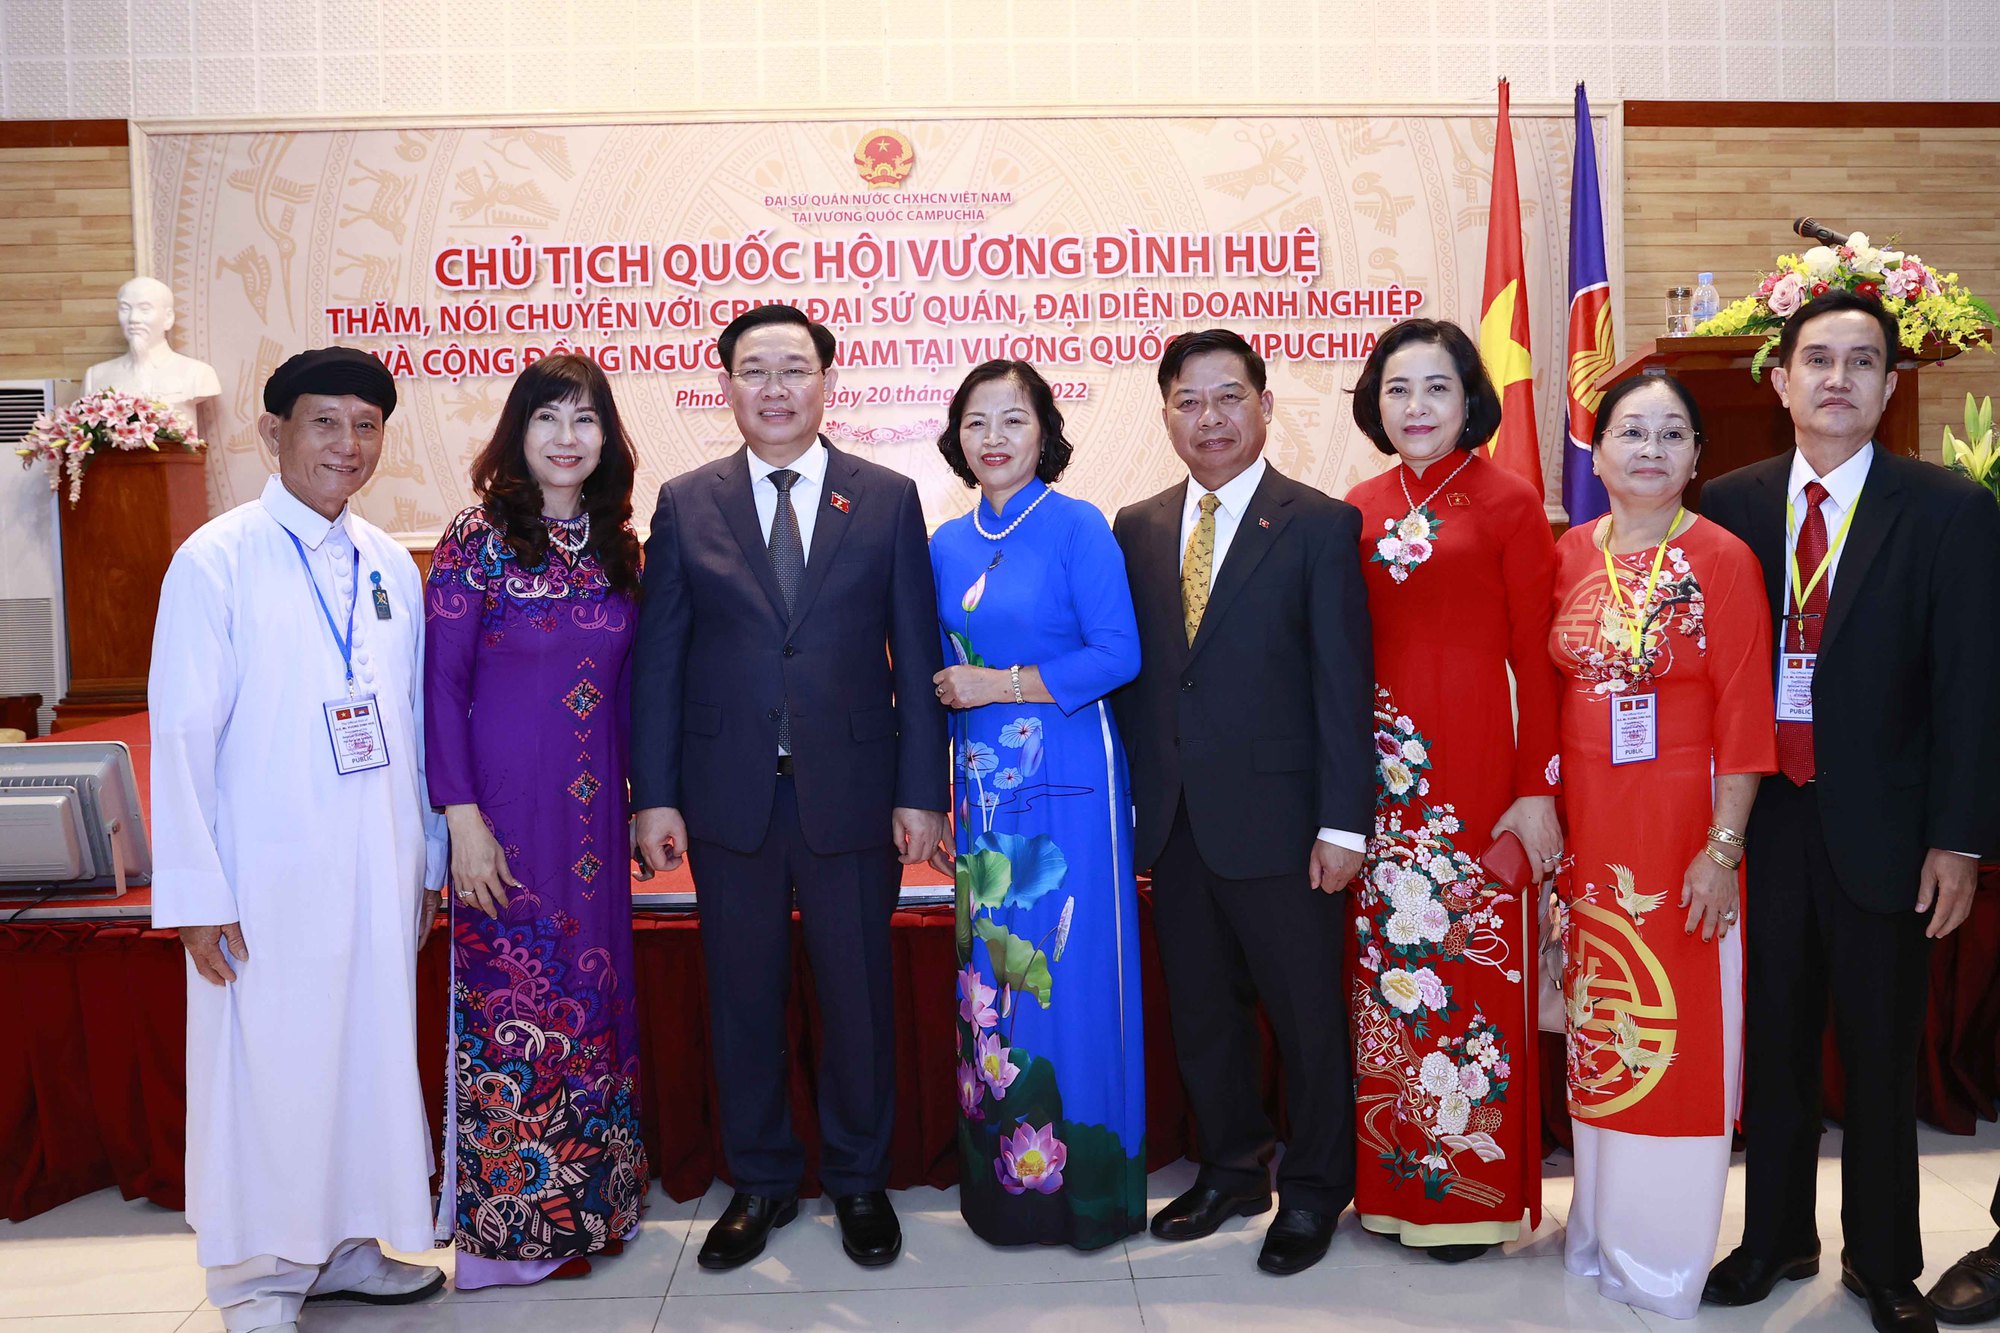 Chủ tịch Quốc hội Vương Đình Huệ gặp cộng đồng người Việt Nam tại Campuchia - Ảnh 15.